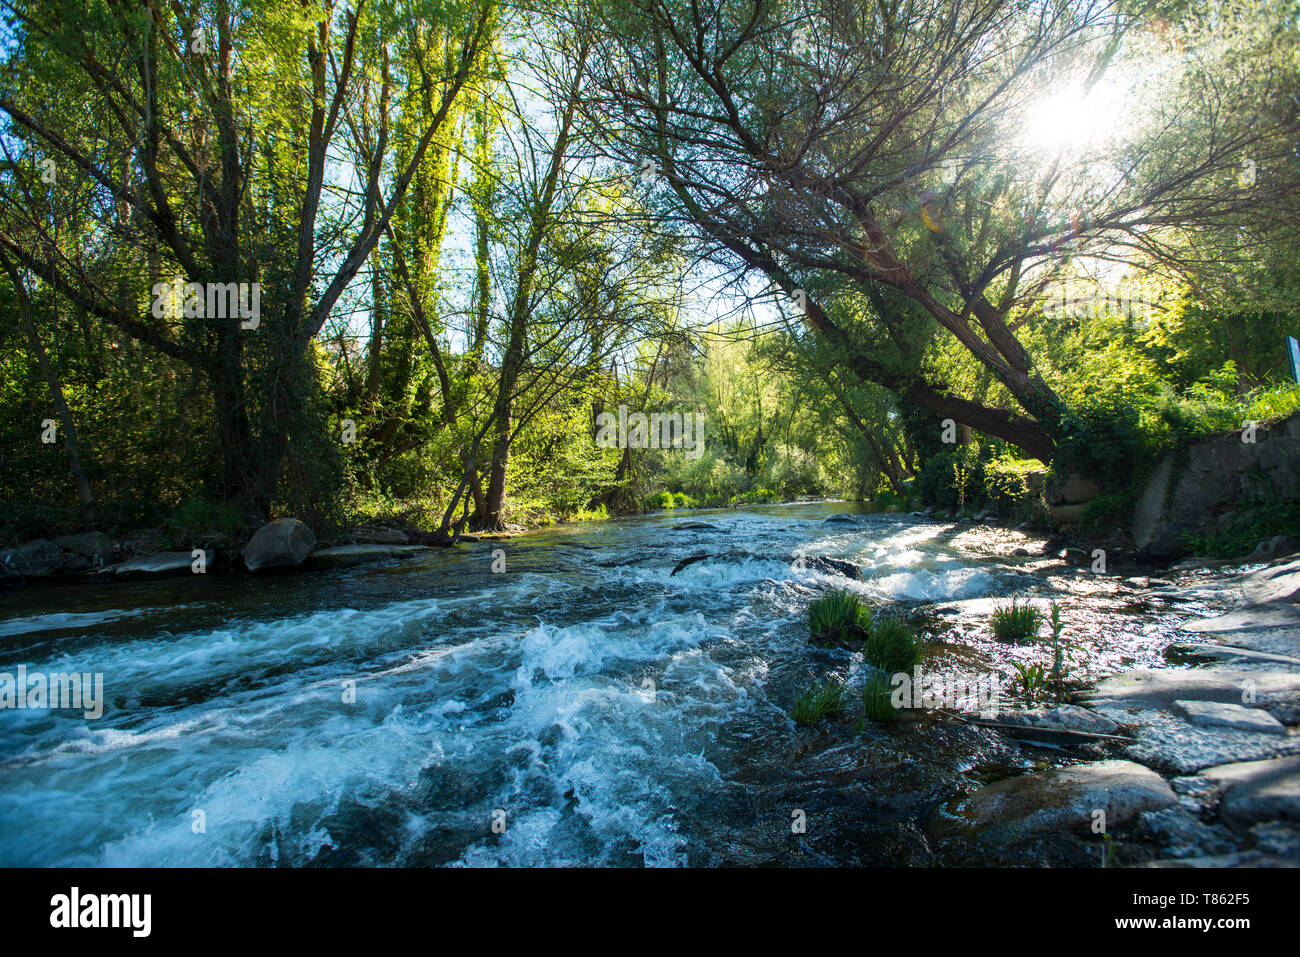 Eresma River and Alameda Park in Segovia, Spain Stock Photo